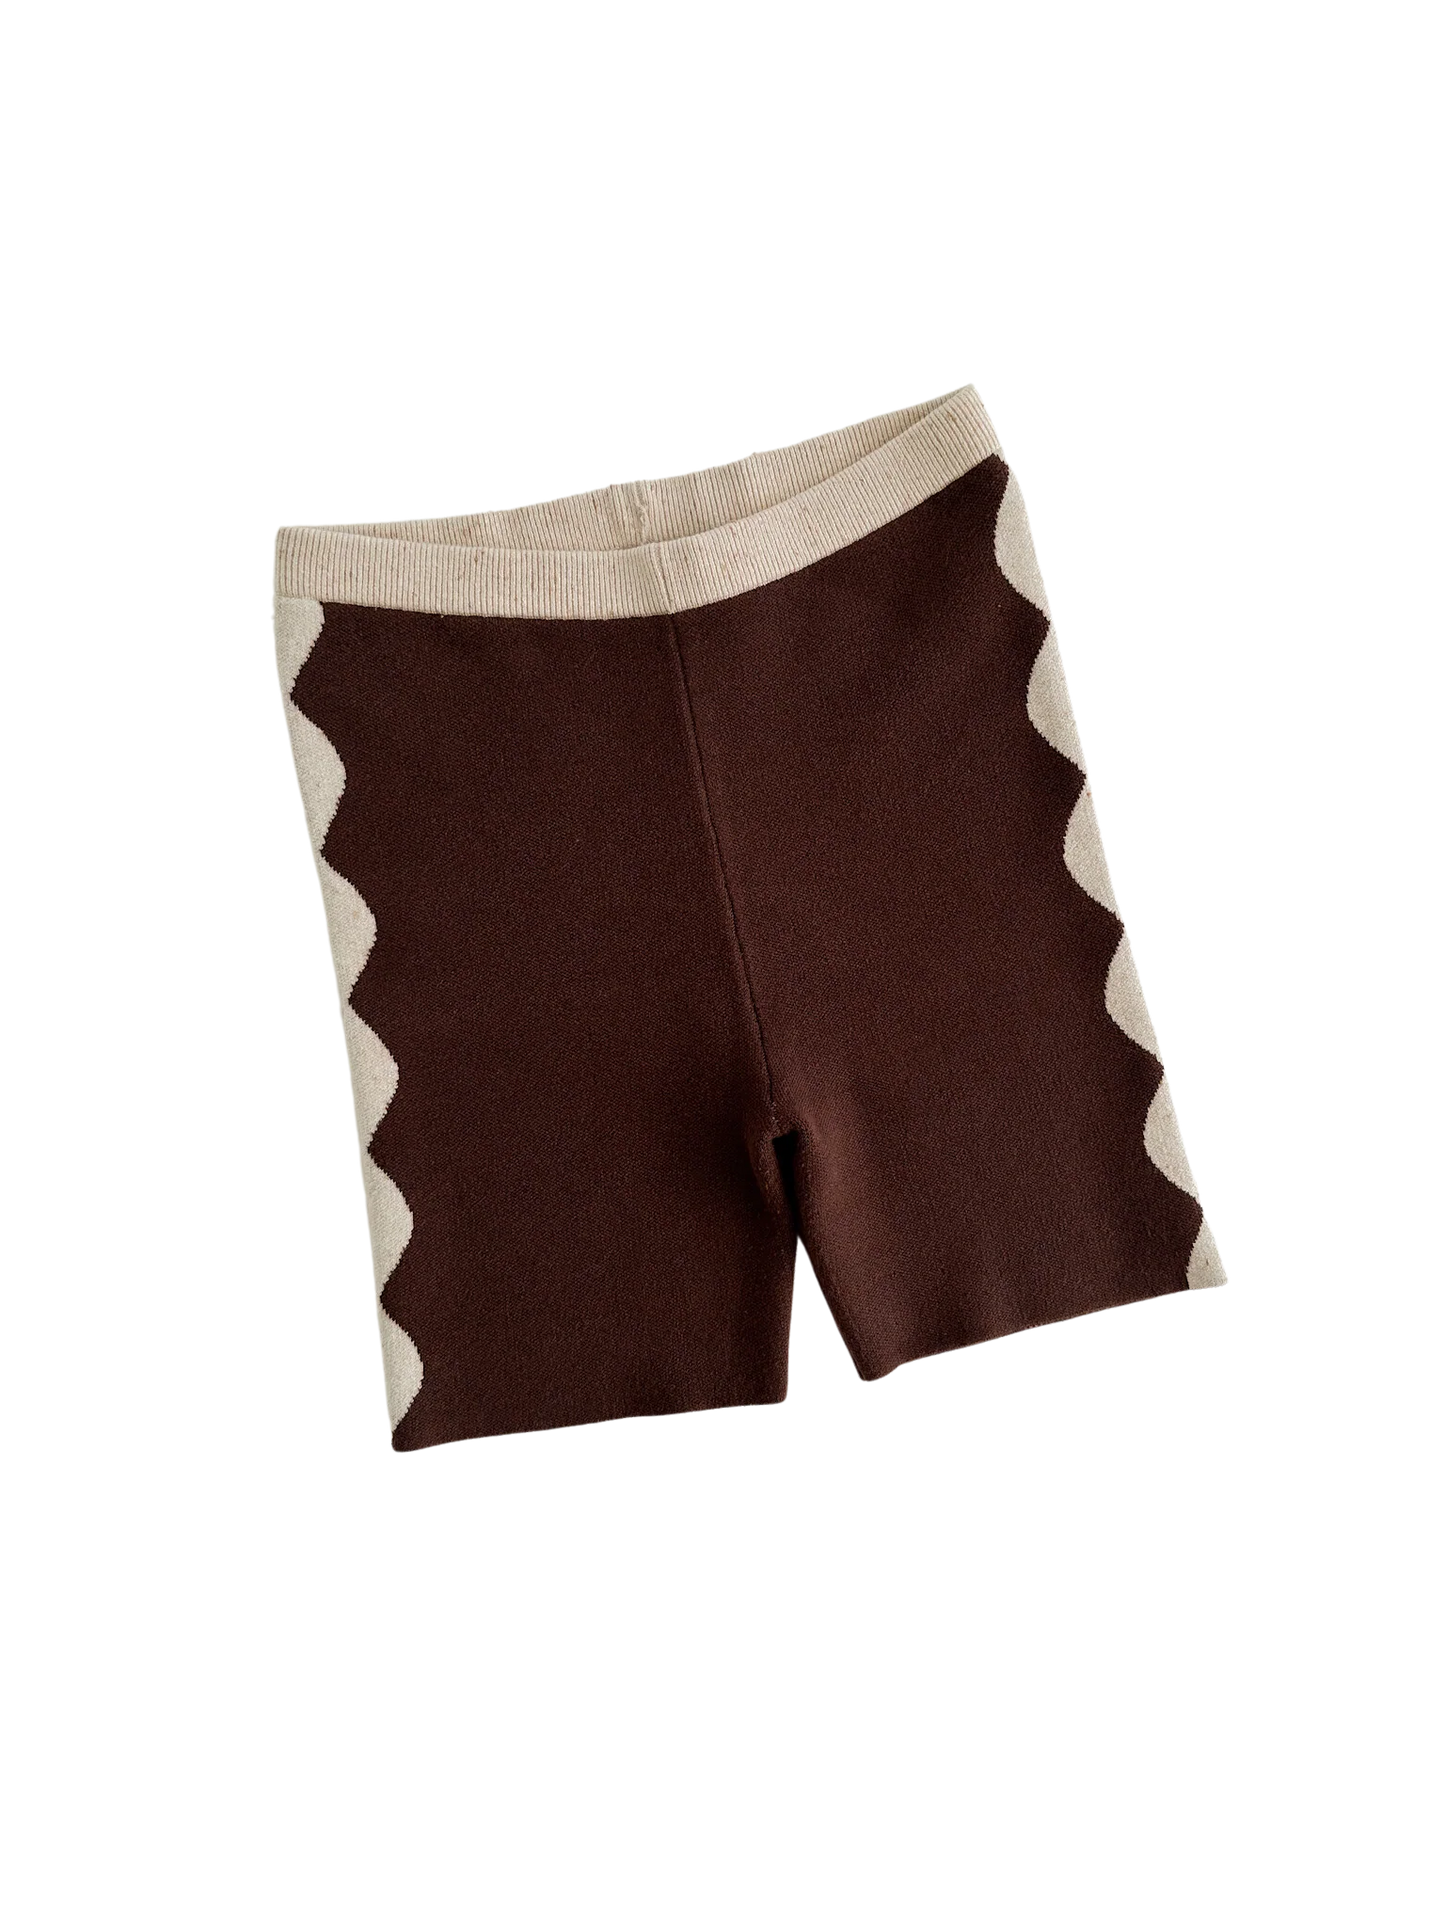 Ziggy Lou Bike Shorts - Chocolate (Women's)